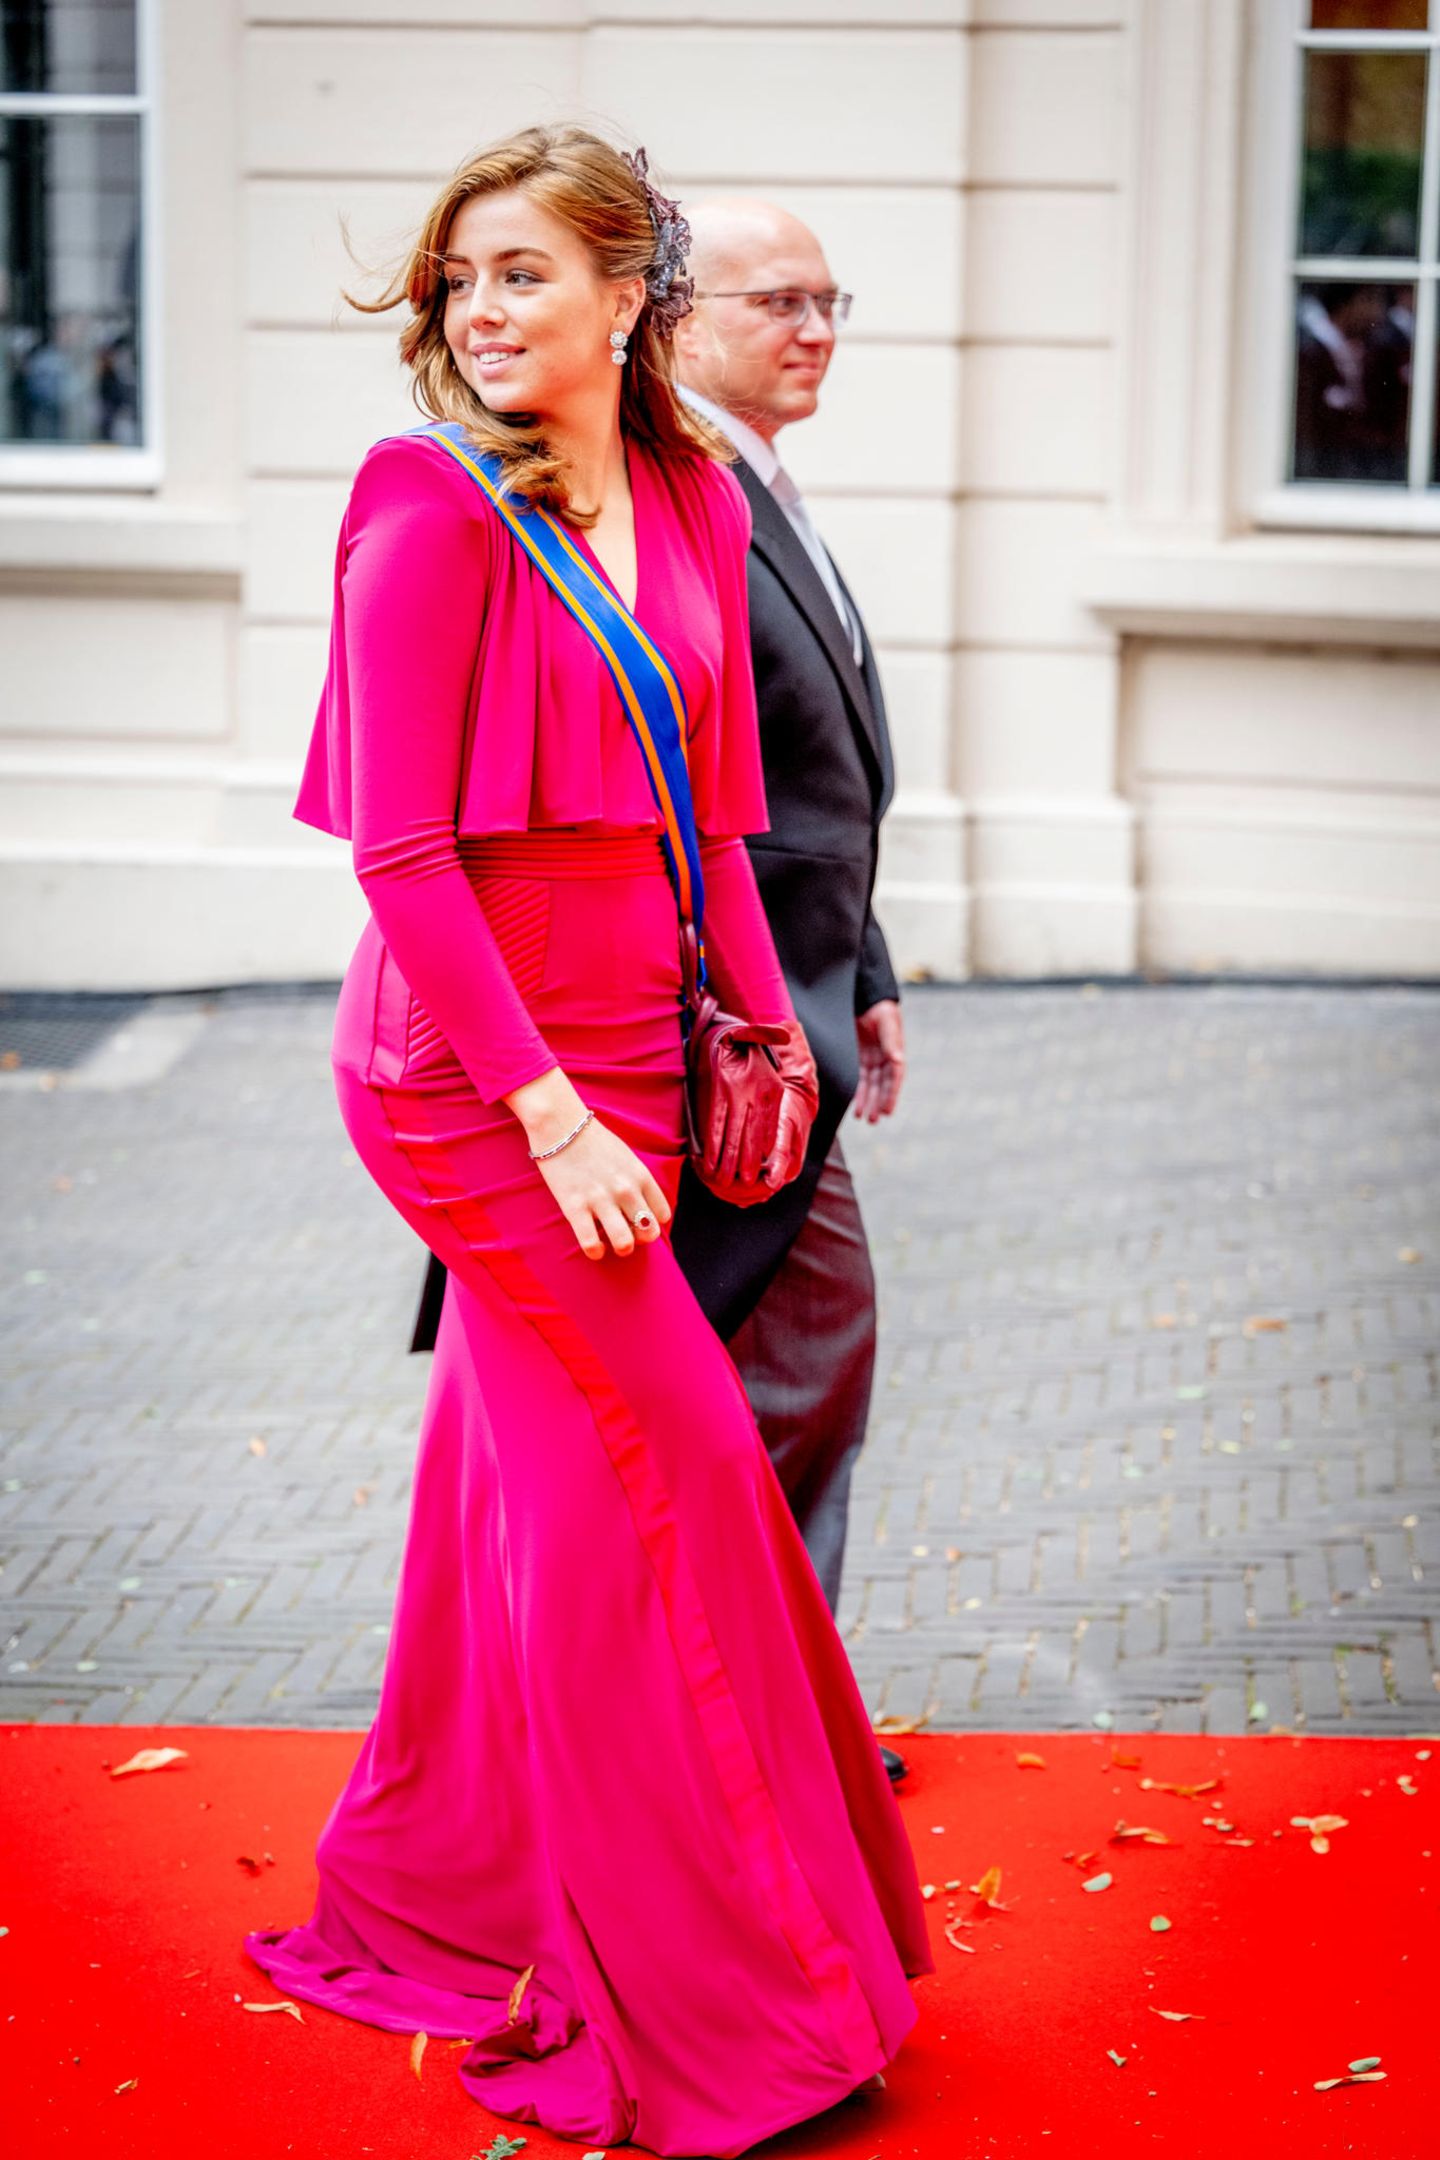 Máxima, Amalia + Co.: Der Style der niederländischen Royals